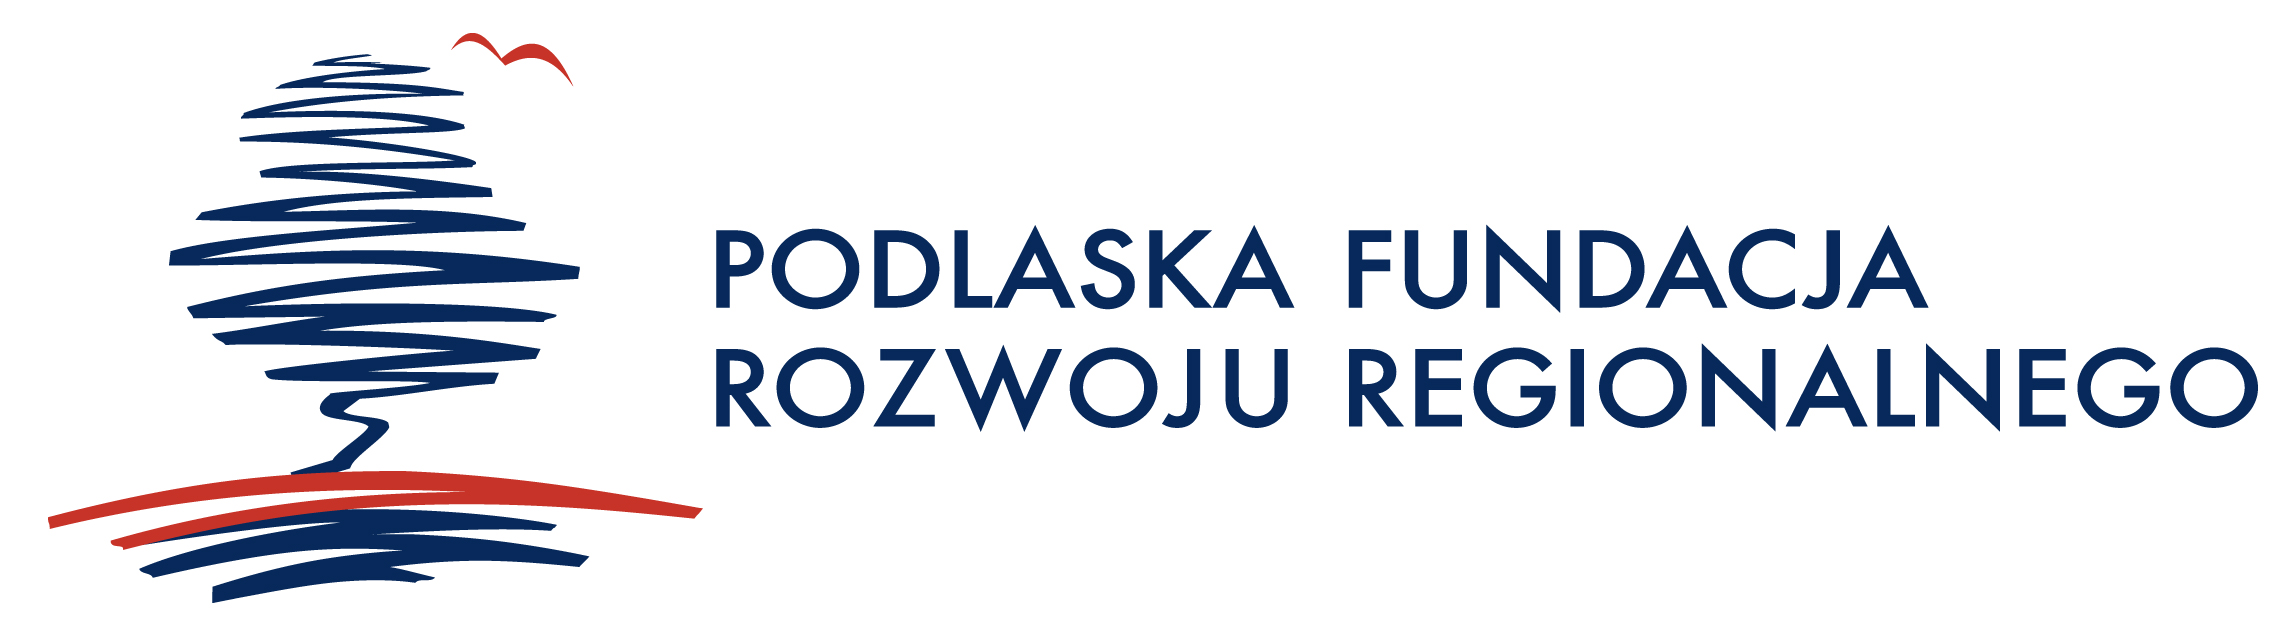 Stakeholders meeting in Podlaska Region, Poland